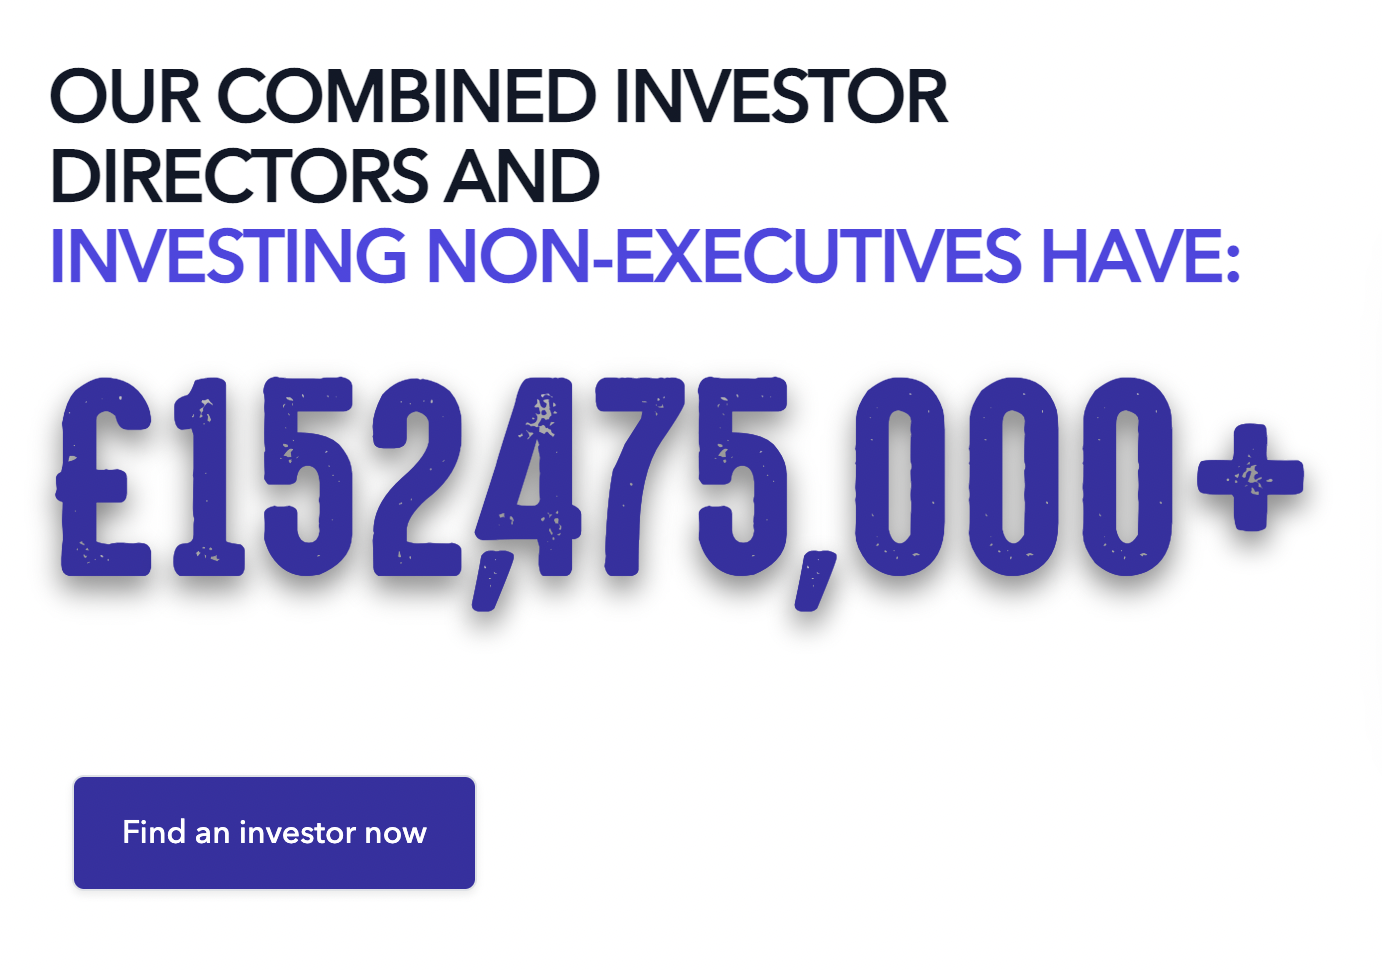 Investing non-executives